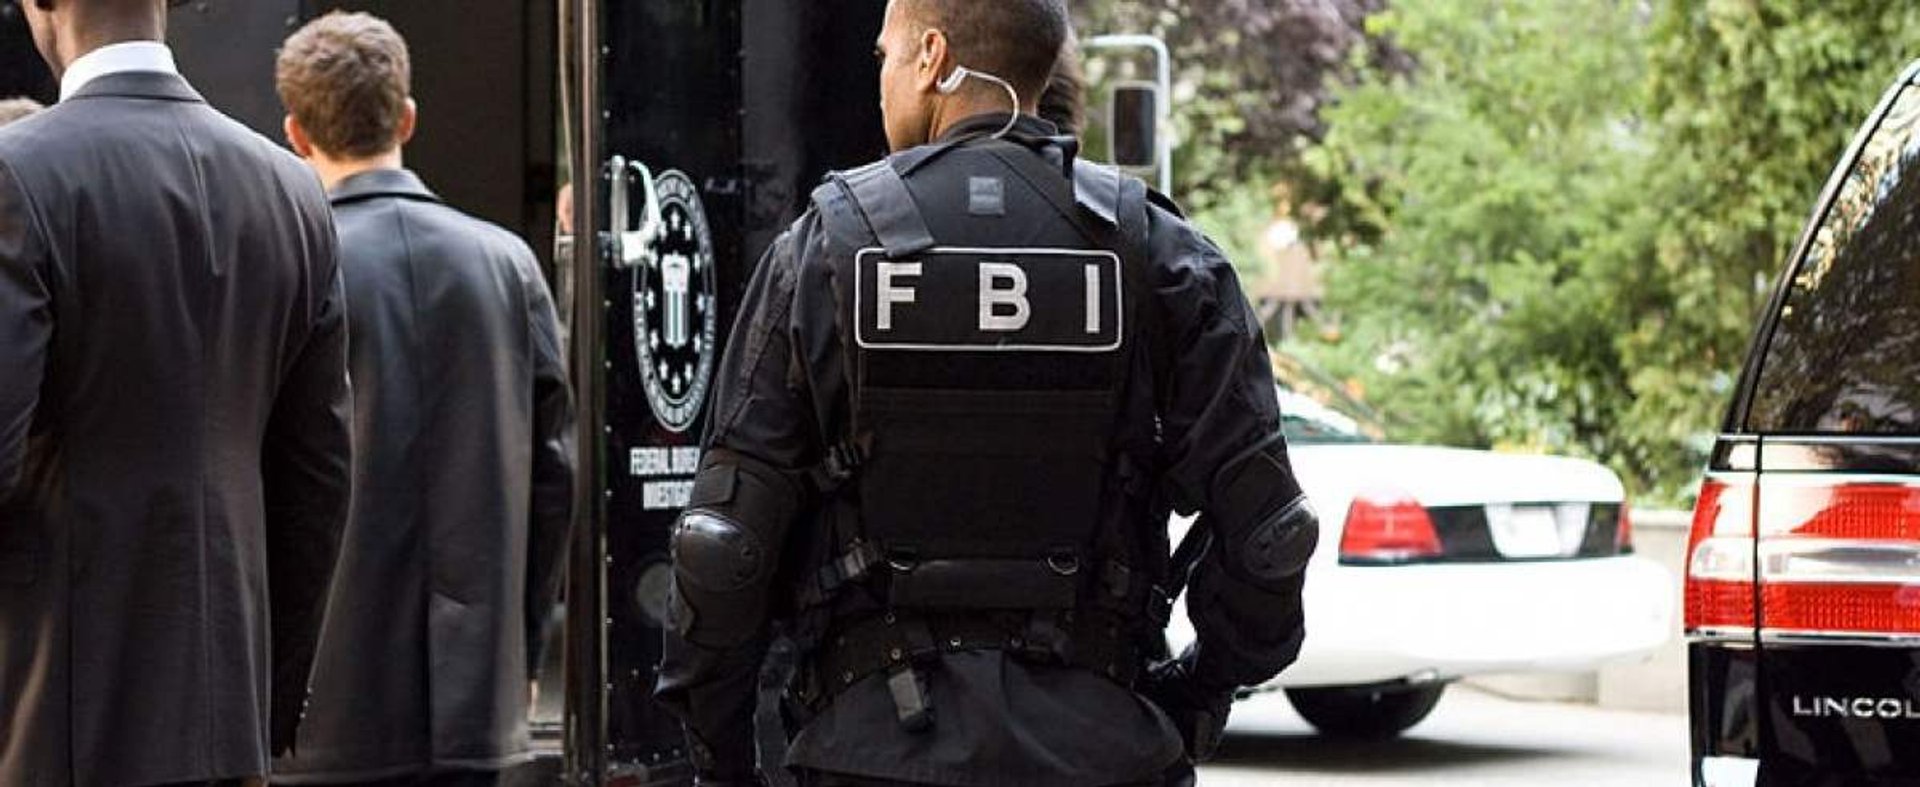 FBI otrzega przed protestami zbrojnymi w Stanach Zjednoczonych